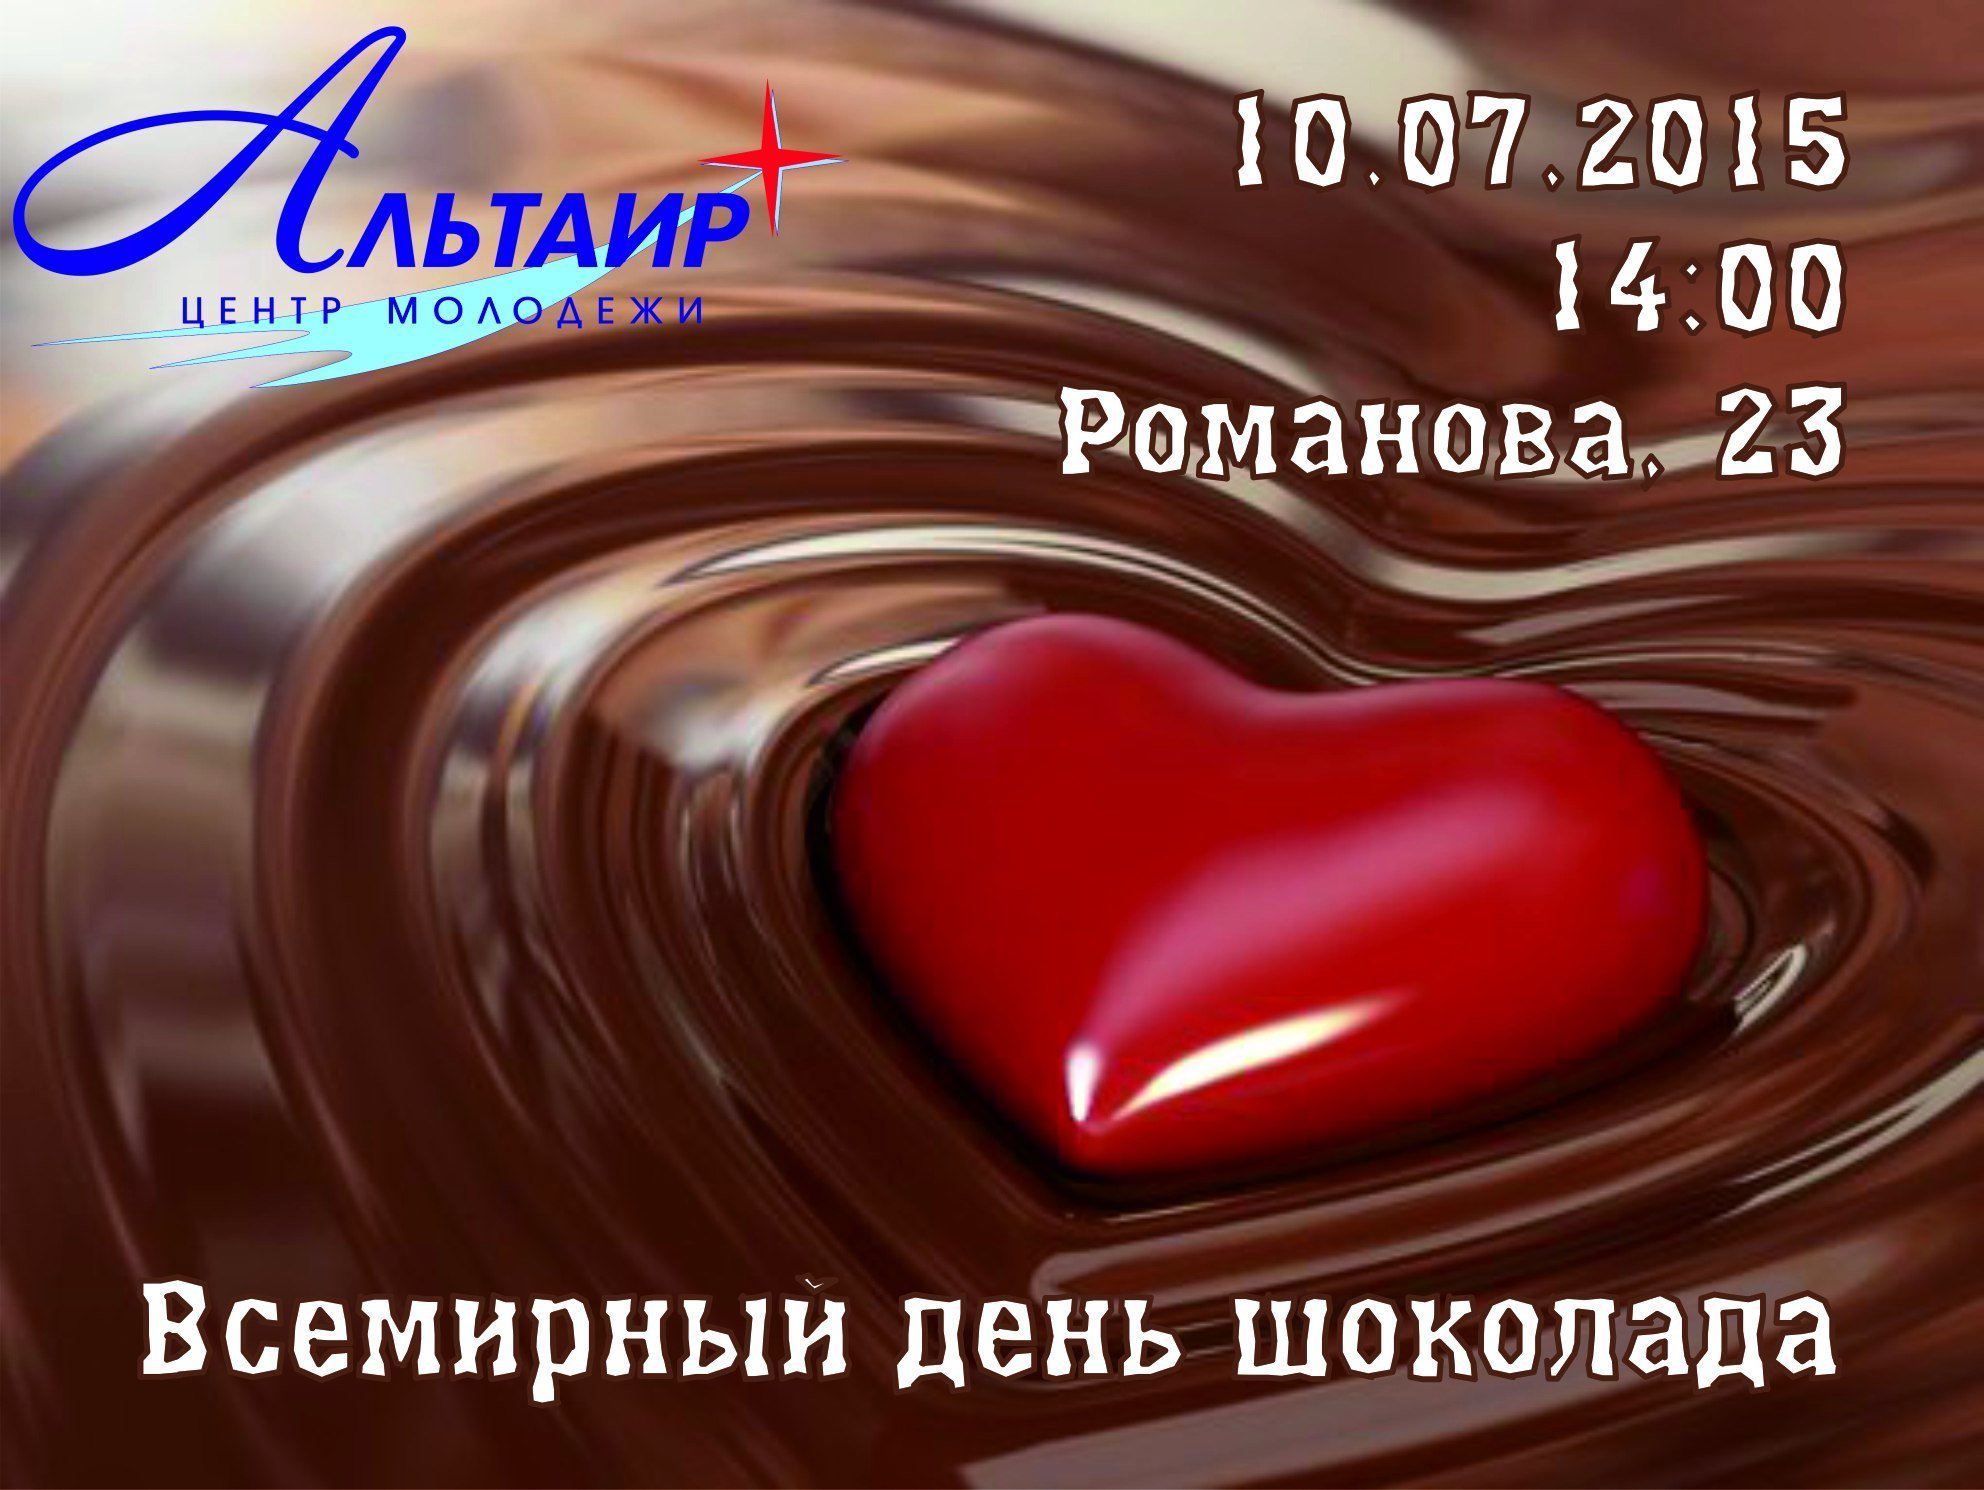 День конфет поздравление. День шоколада. Всемирный день шоколада. Праздник день шоколада. День шоколадных сюрпризов.